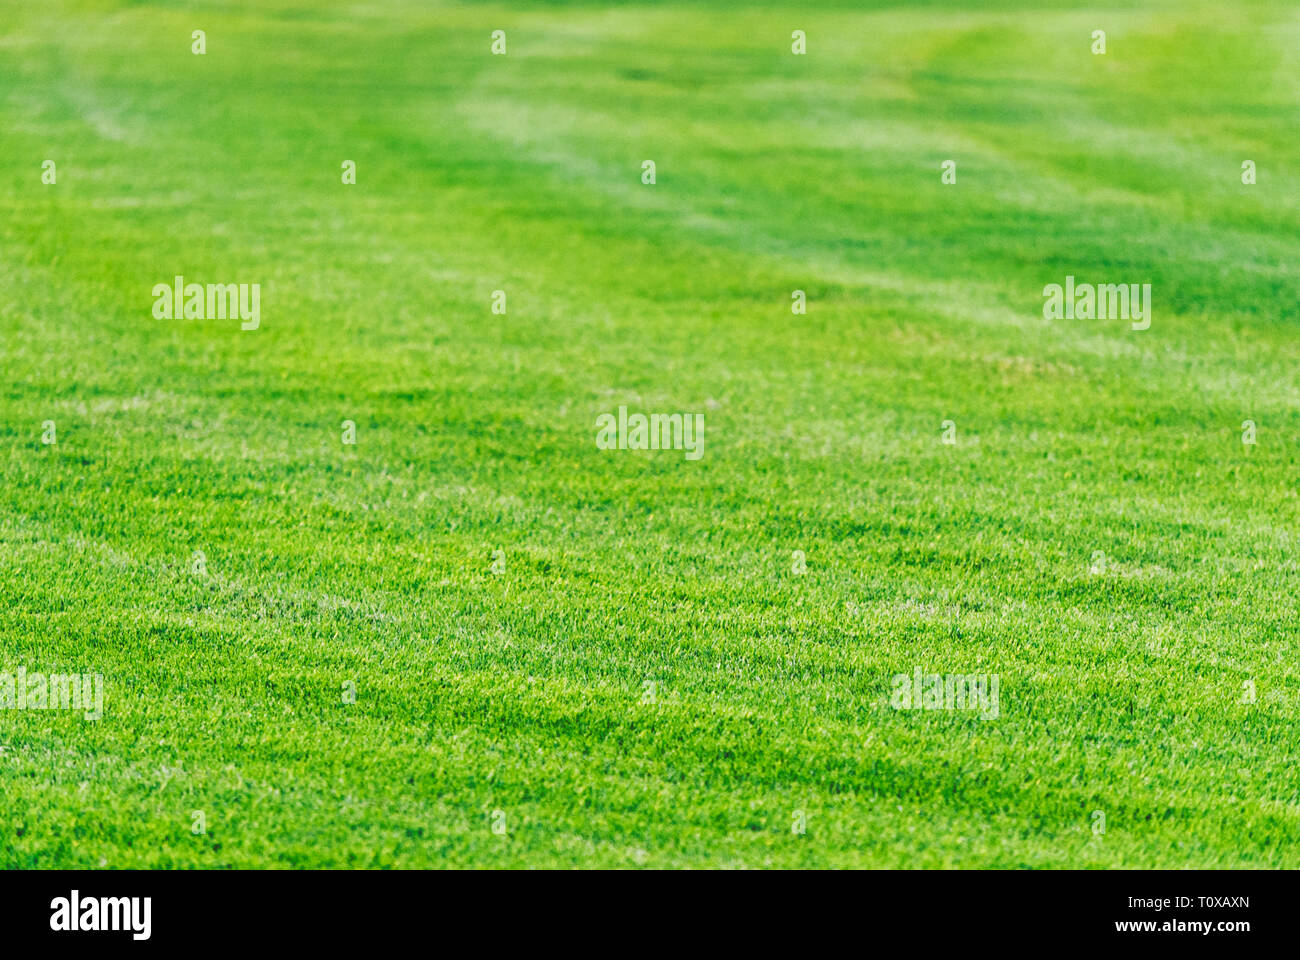 Perfekt gemäht grünen Rasen Hintergrund. Golf Spielplatz in Dubai. Gras eingereicht Textur. Stockfoto